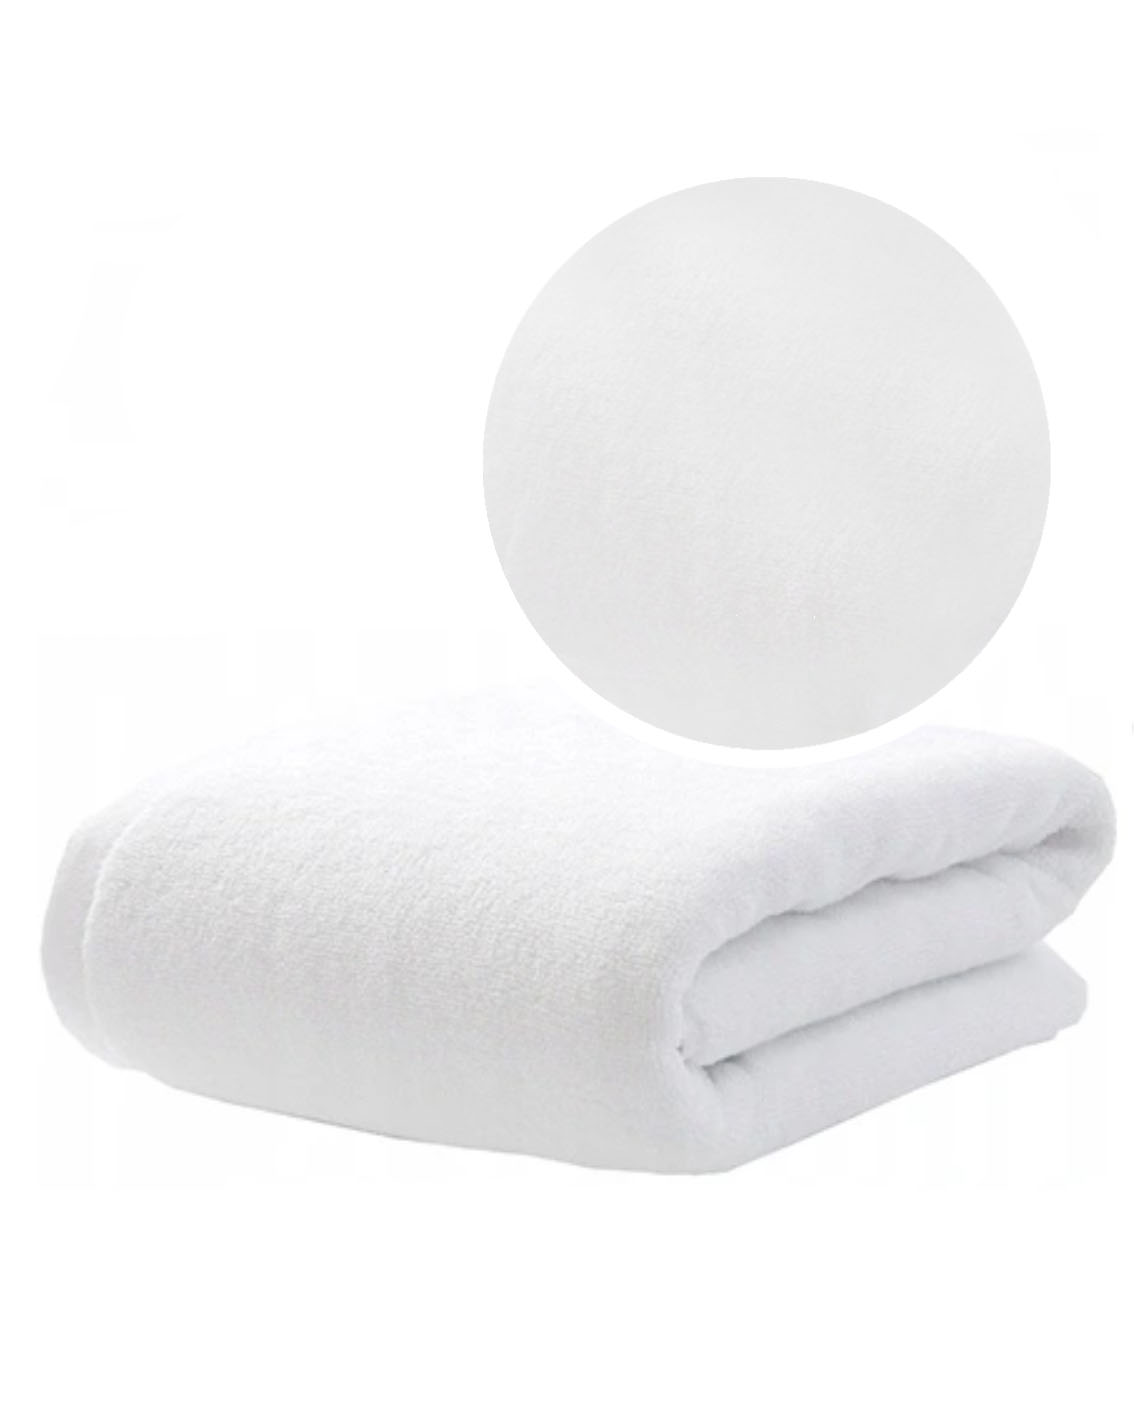 Ręcznik kompielowy frotte hotelowy 100% bawełny. gramatura 400 g. posiada certyfikat Oeko-tex. Model Tango.